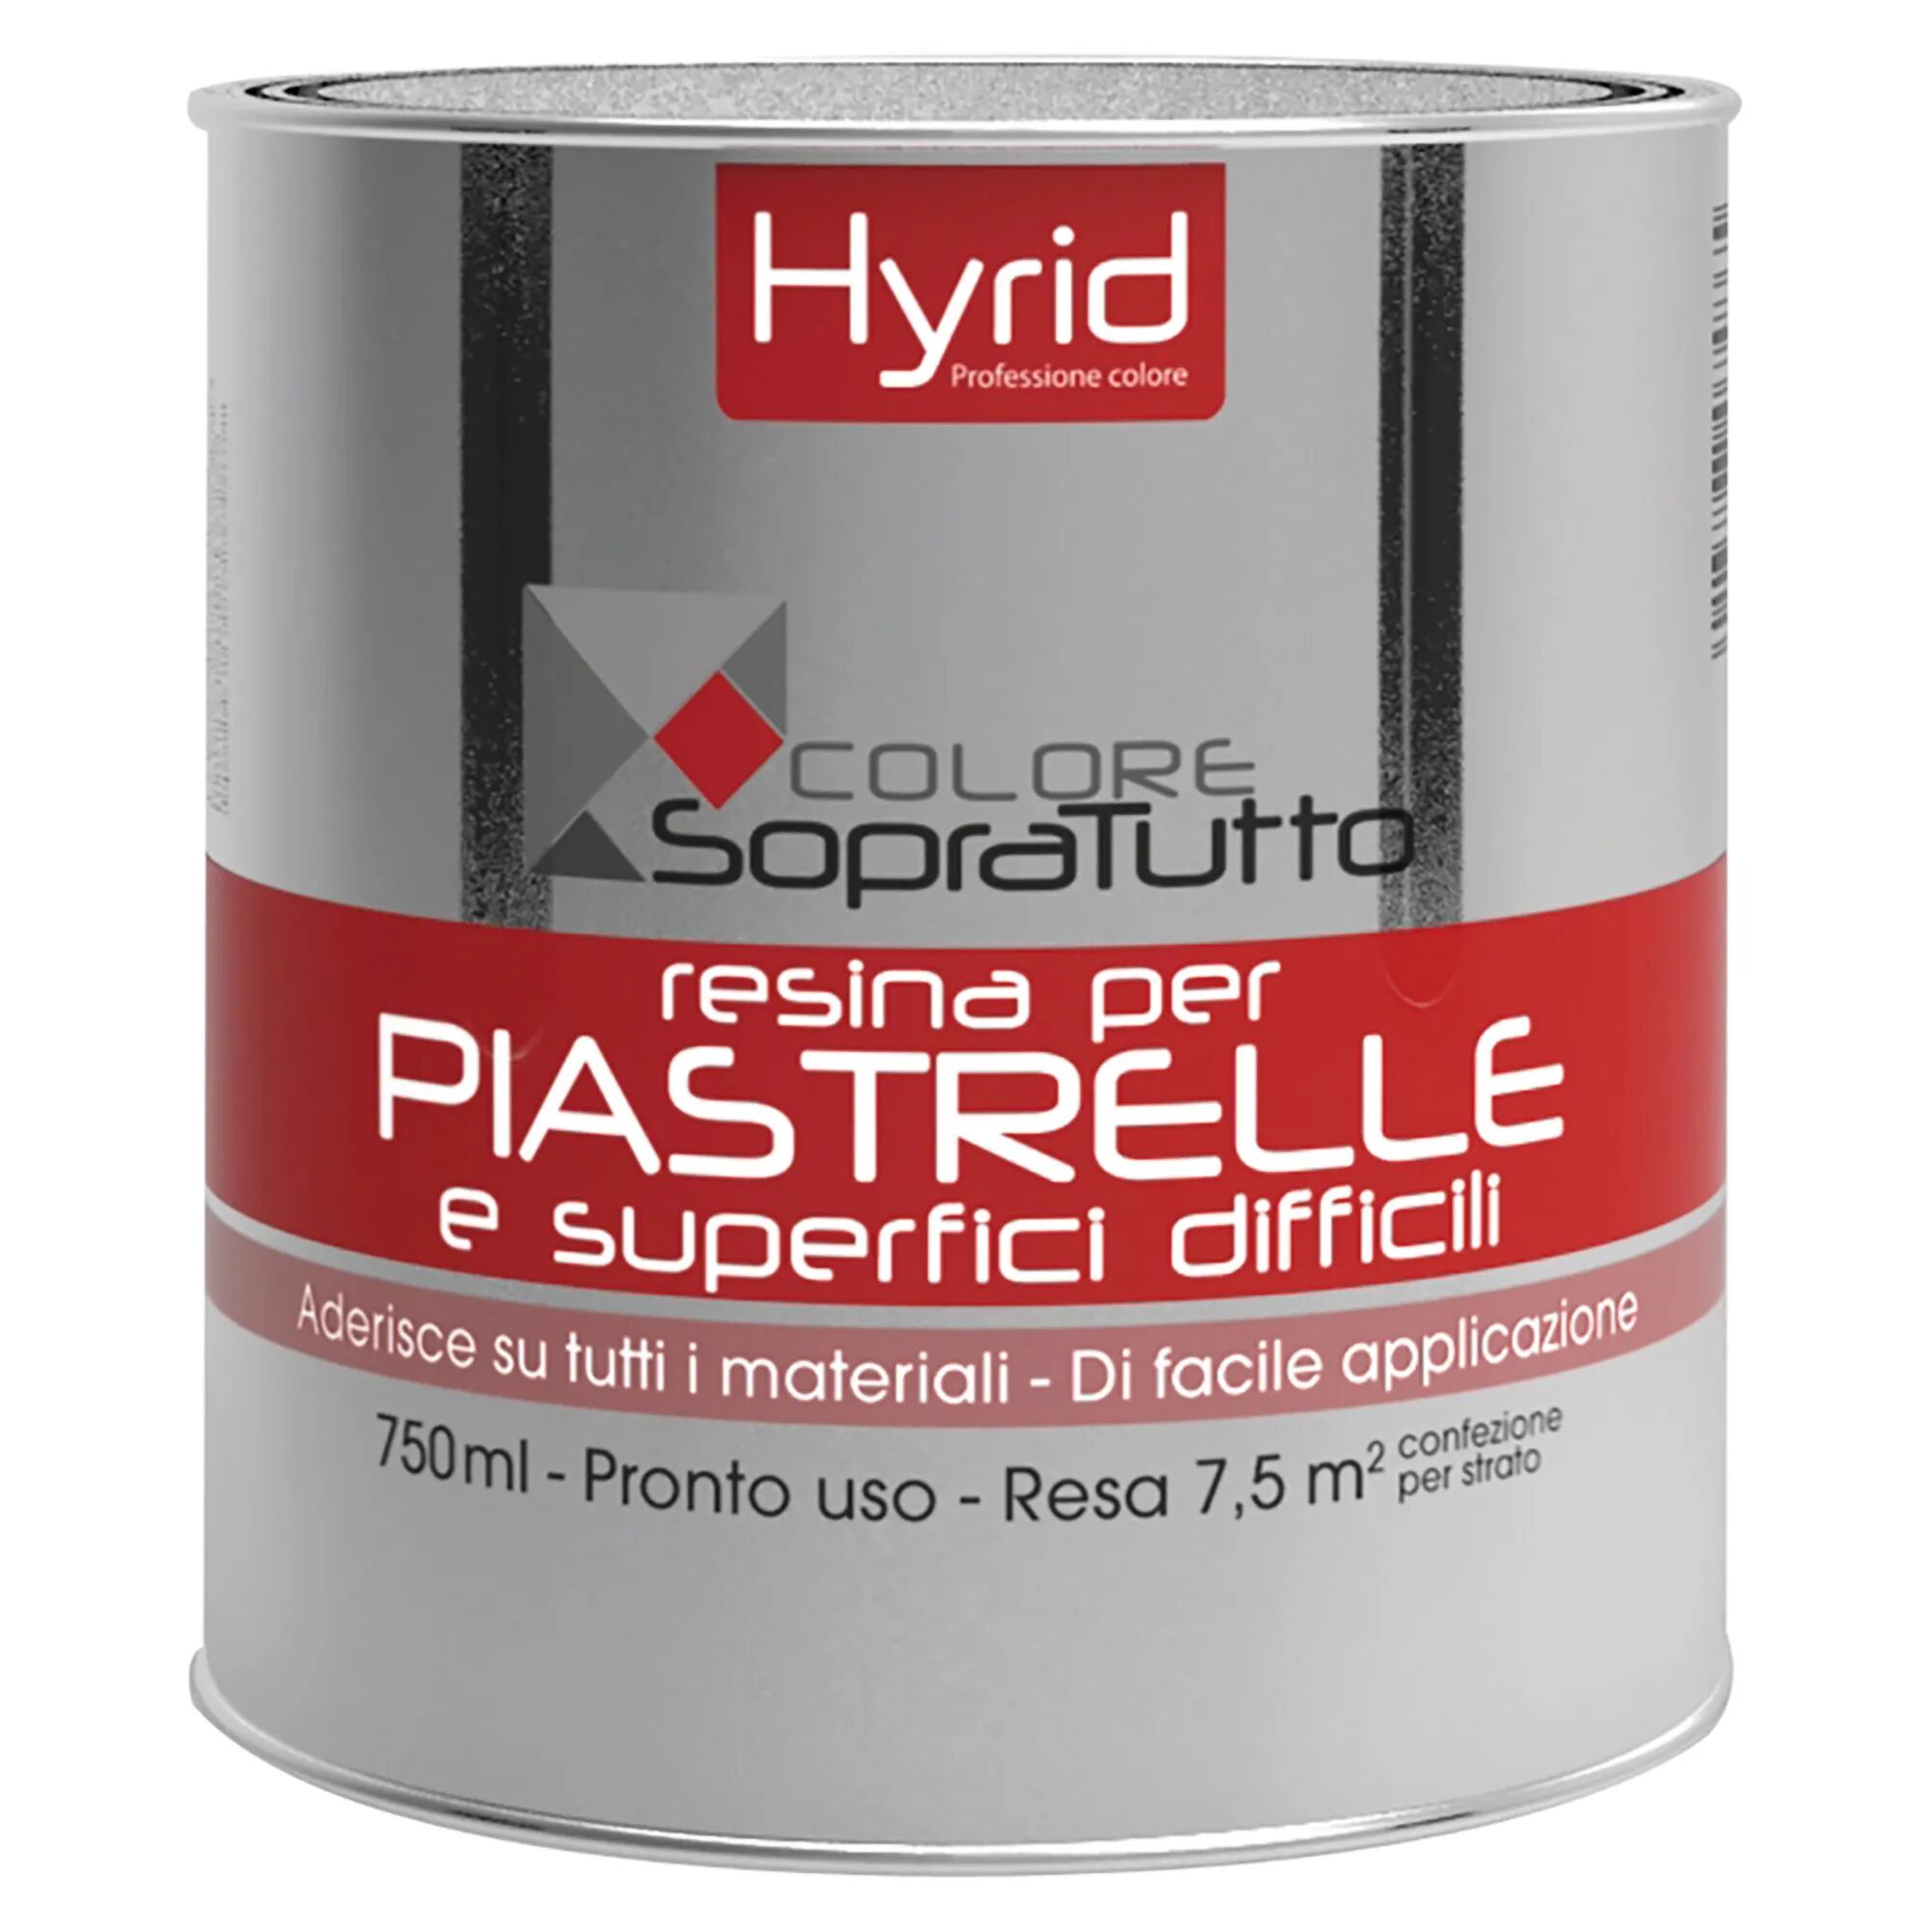 Hyrid By Covema RESINA PIASTRELLE HYRID CRETA 750 ml PER SUPERFICI DIFFICILI 10 m²  CON 1 l PRONTO USO